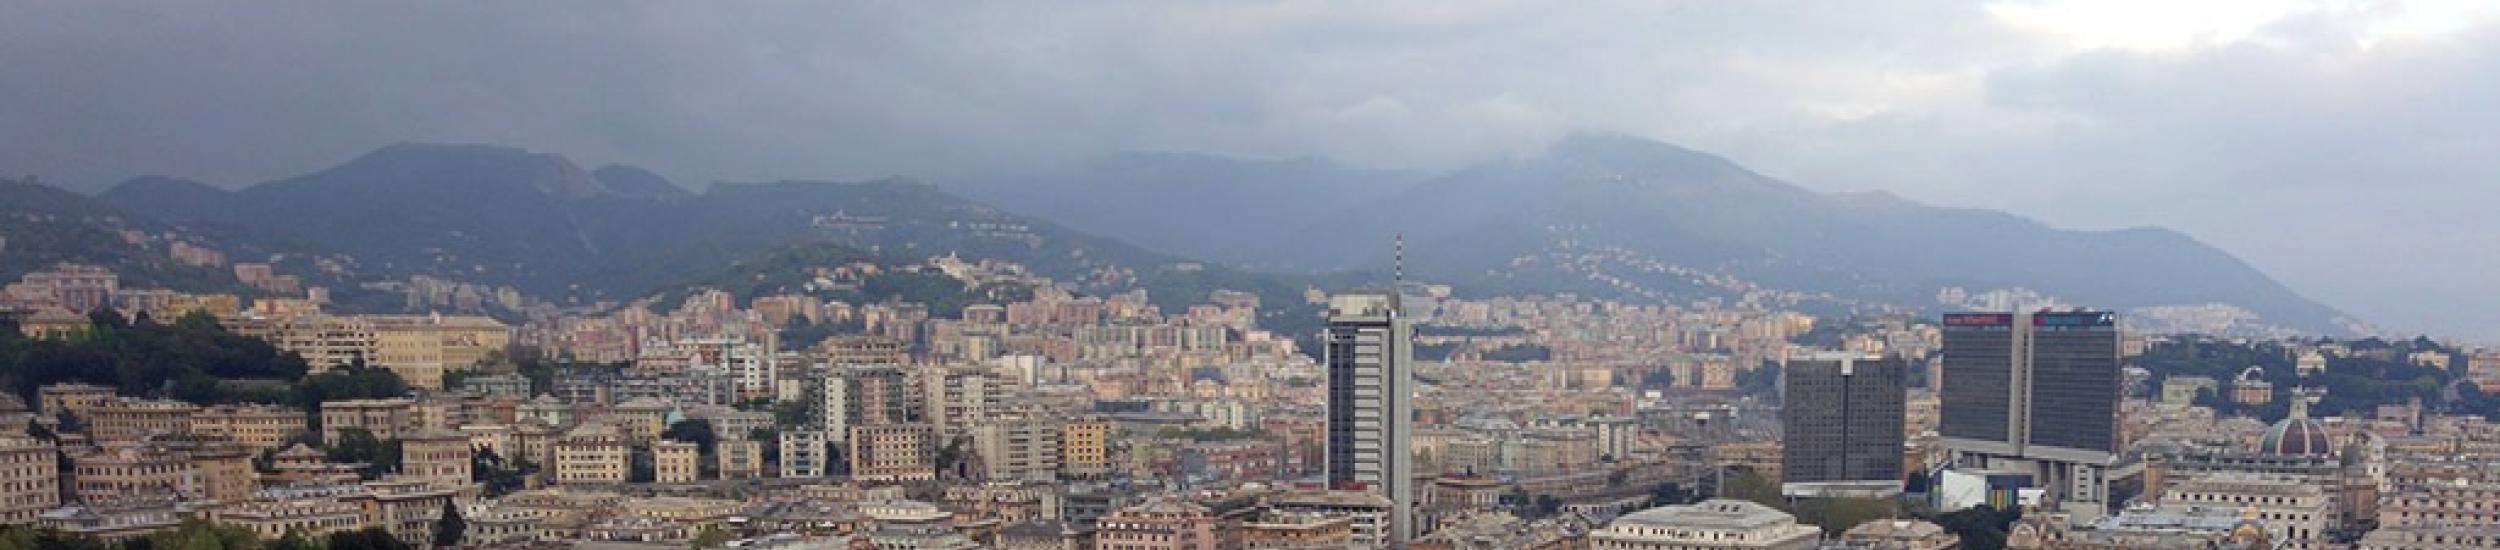 Aria, inquinamento nei limiti nel weekend nella città metropolitana di genova (news del 2016-04-18 09:34:49)